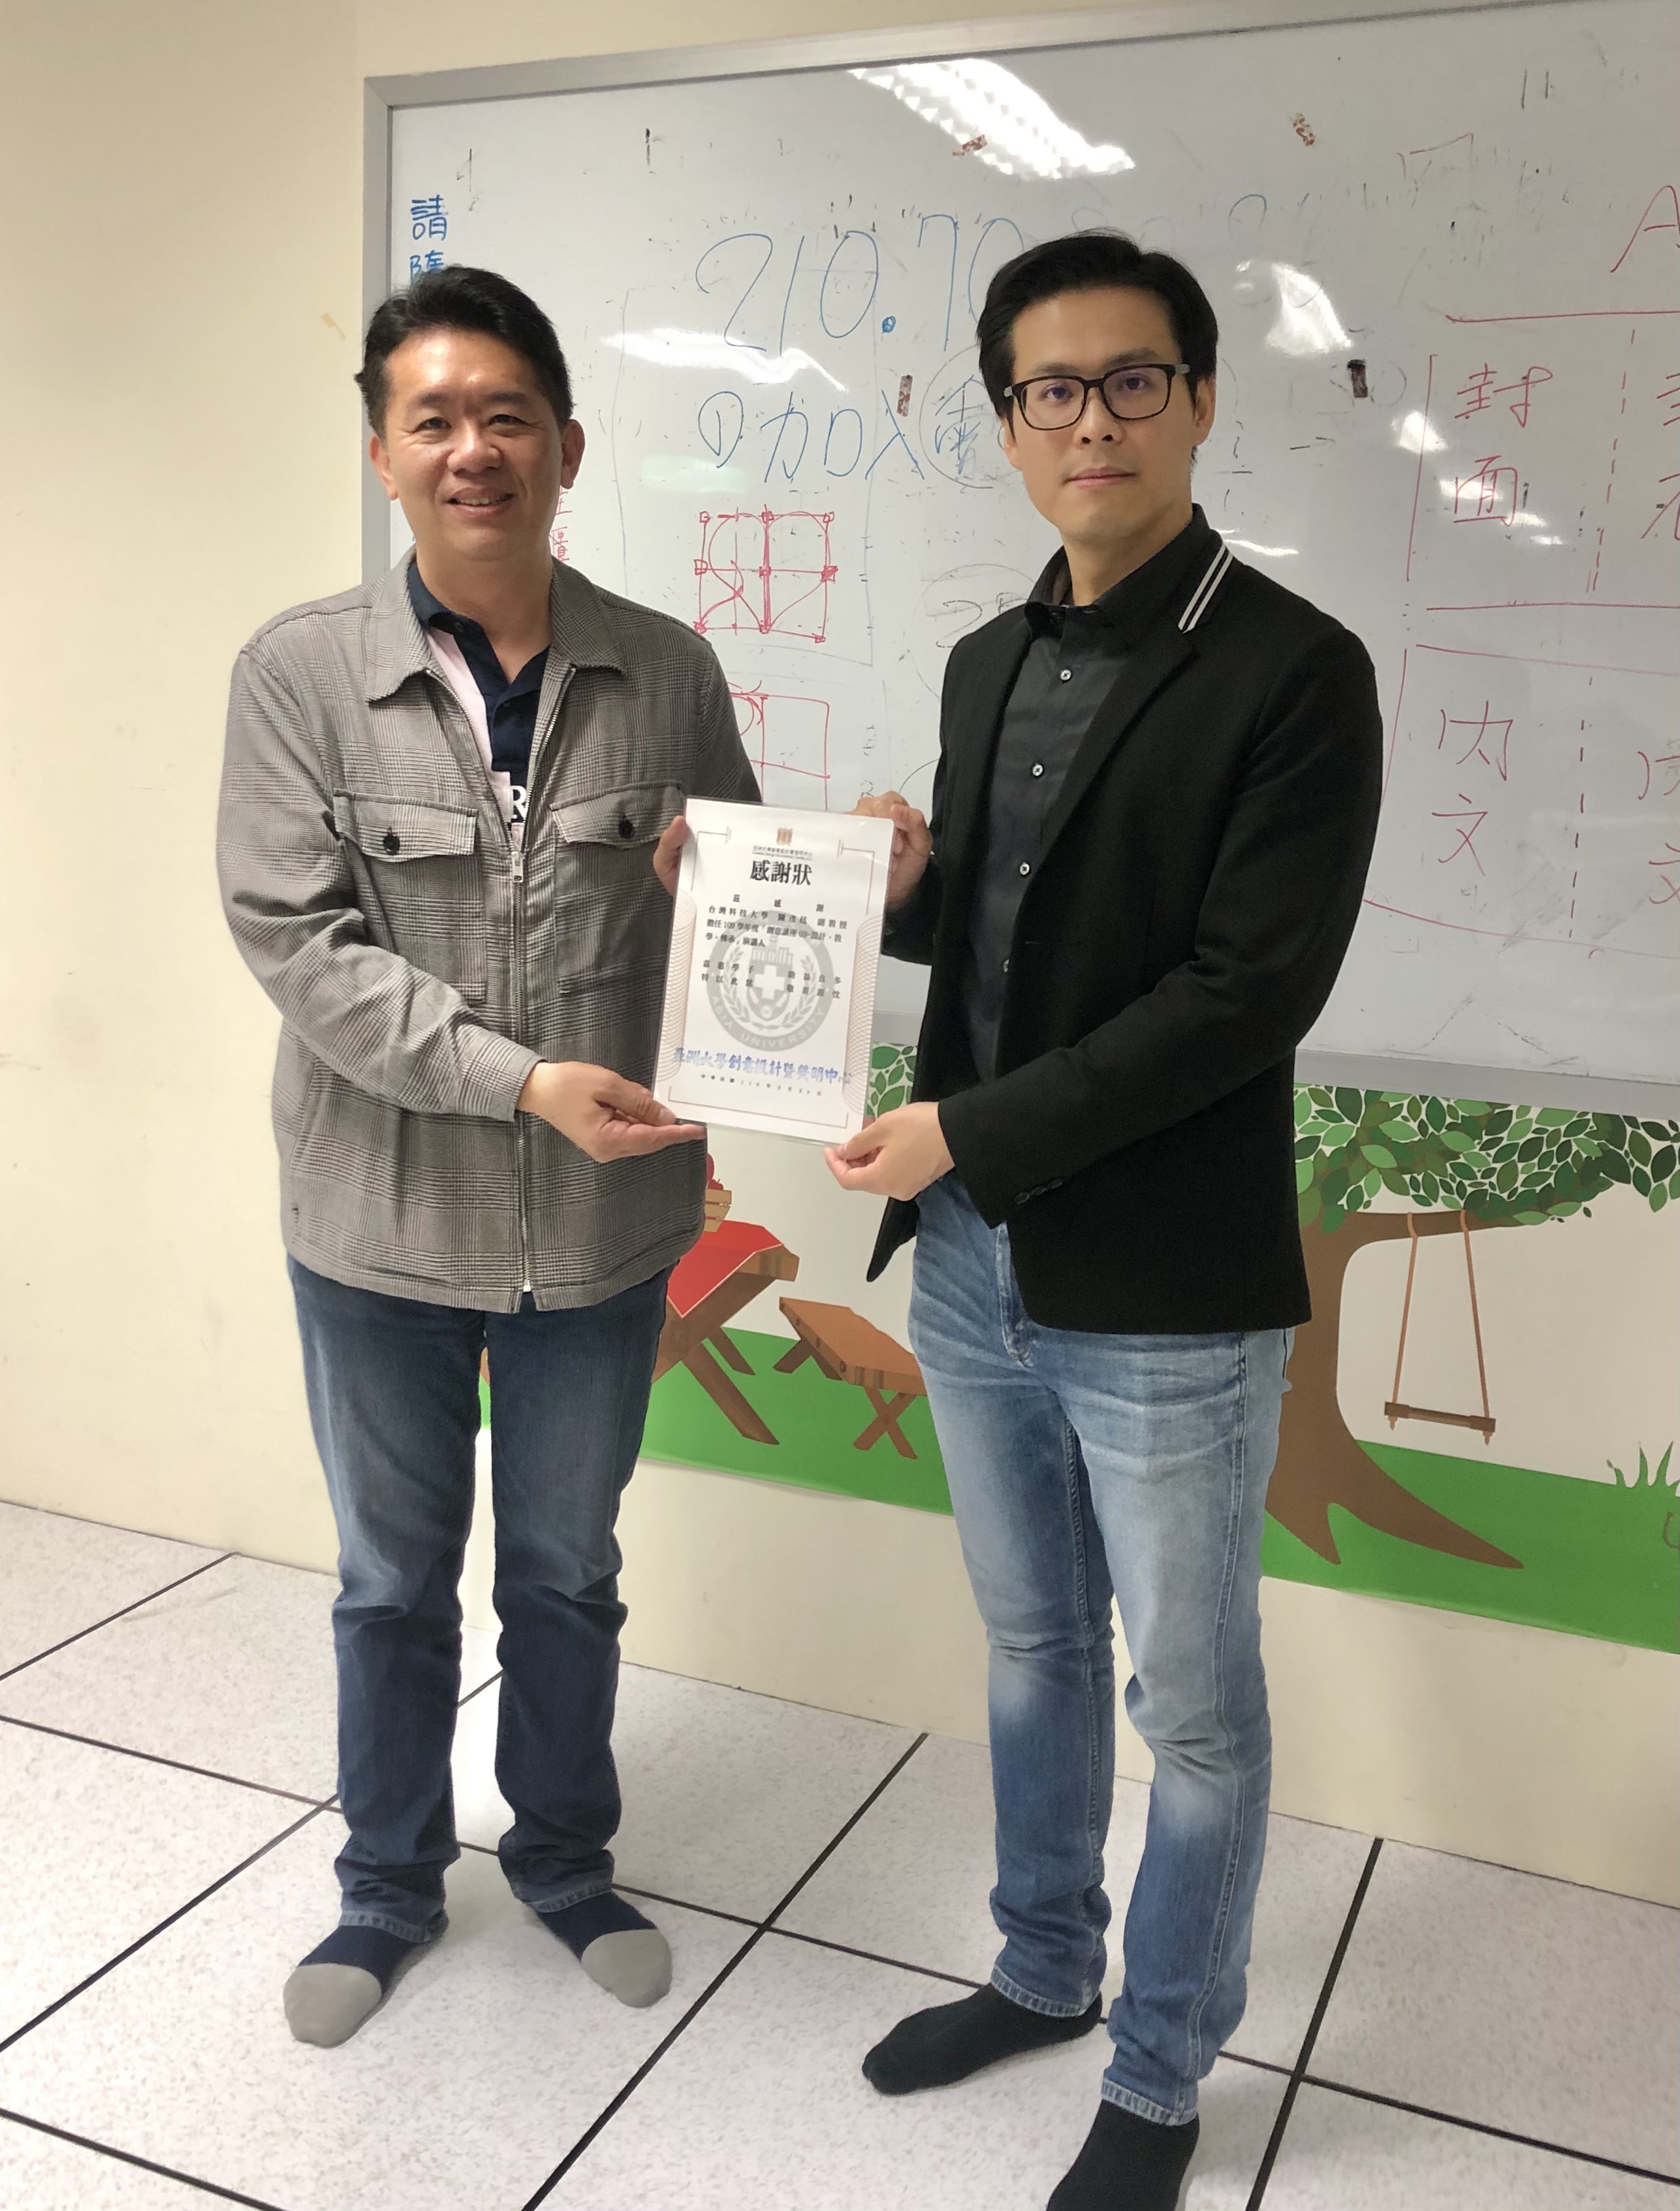 亞大發明中心主任林信宏(左)，致贈感謝狀給陳彥廷教授。